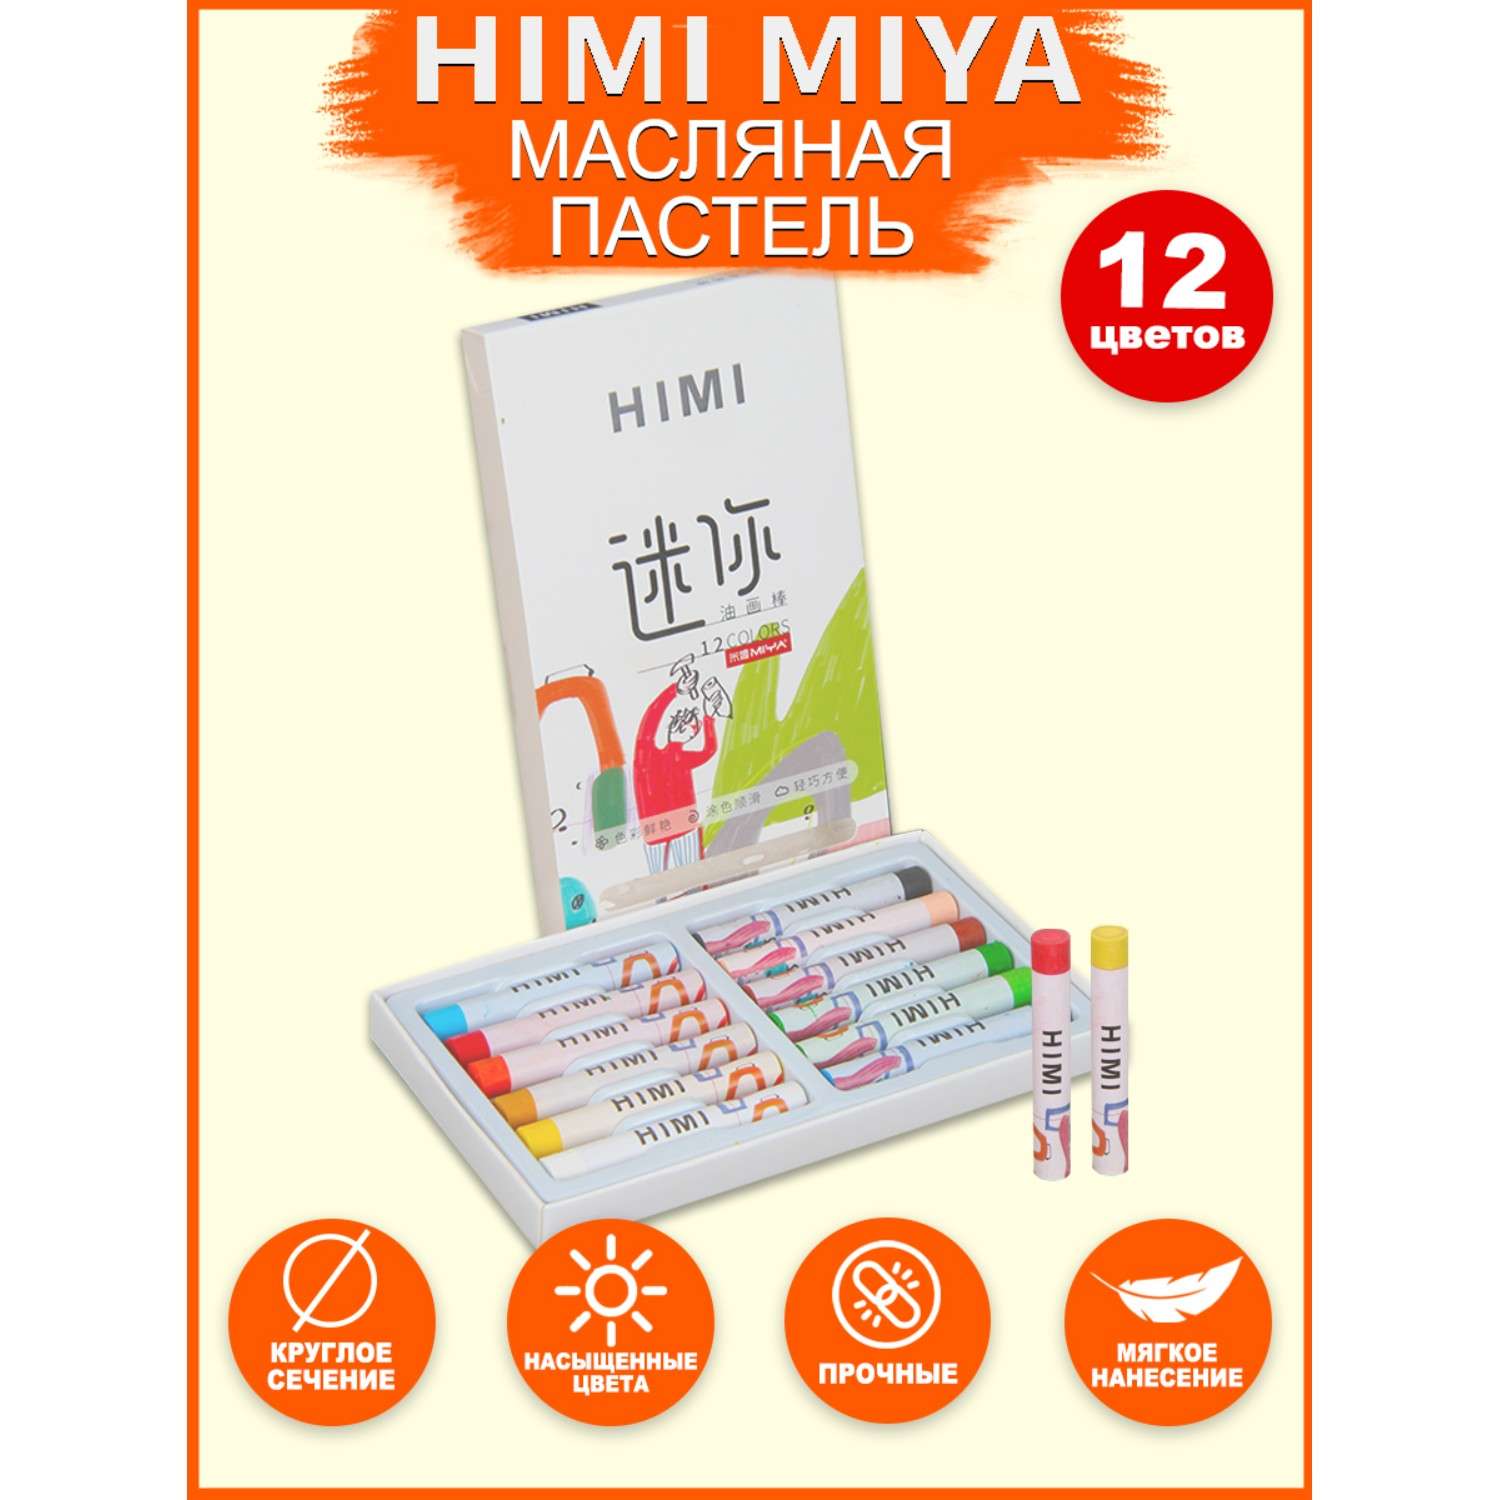 Пастель для рисования HIMI MIYA мини 12 цветов FC.YH.HM.001 - фото 2